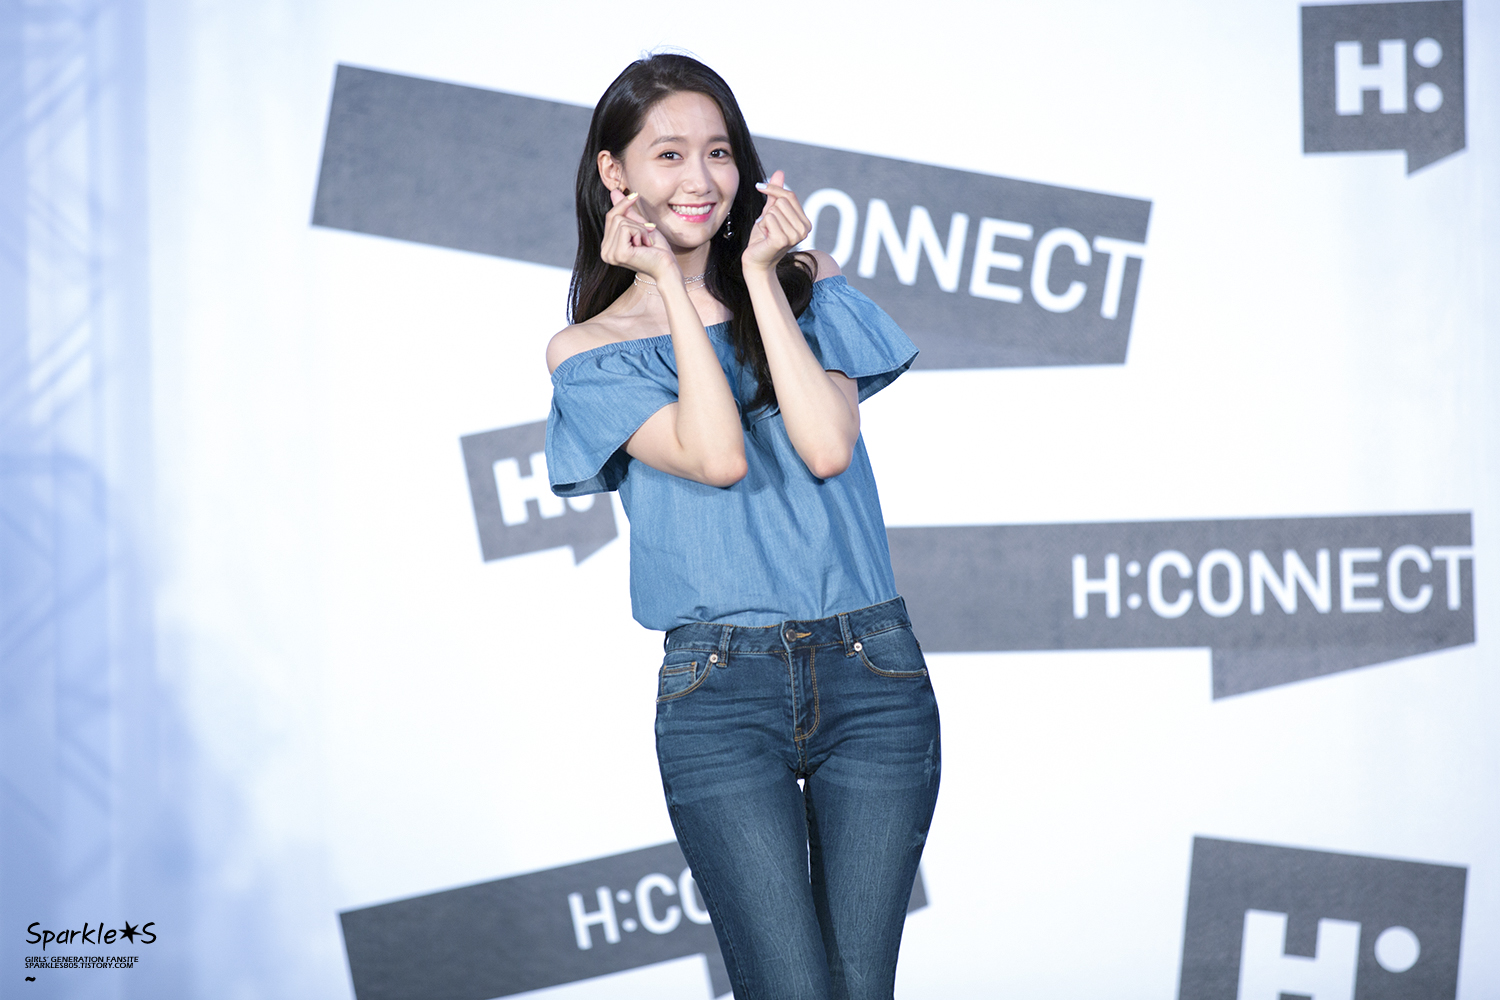 [PIC][22-07-2017]YoonA khởi hành đi Đài Loan để tham dự buổi Fanmeeting cho thương hiệu "H:CONNECT" vào hôm nay - Page 4 27D78133597560A81DE9CF